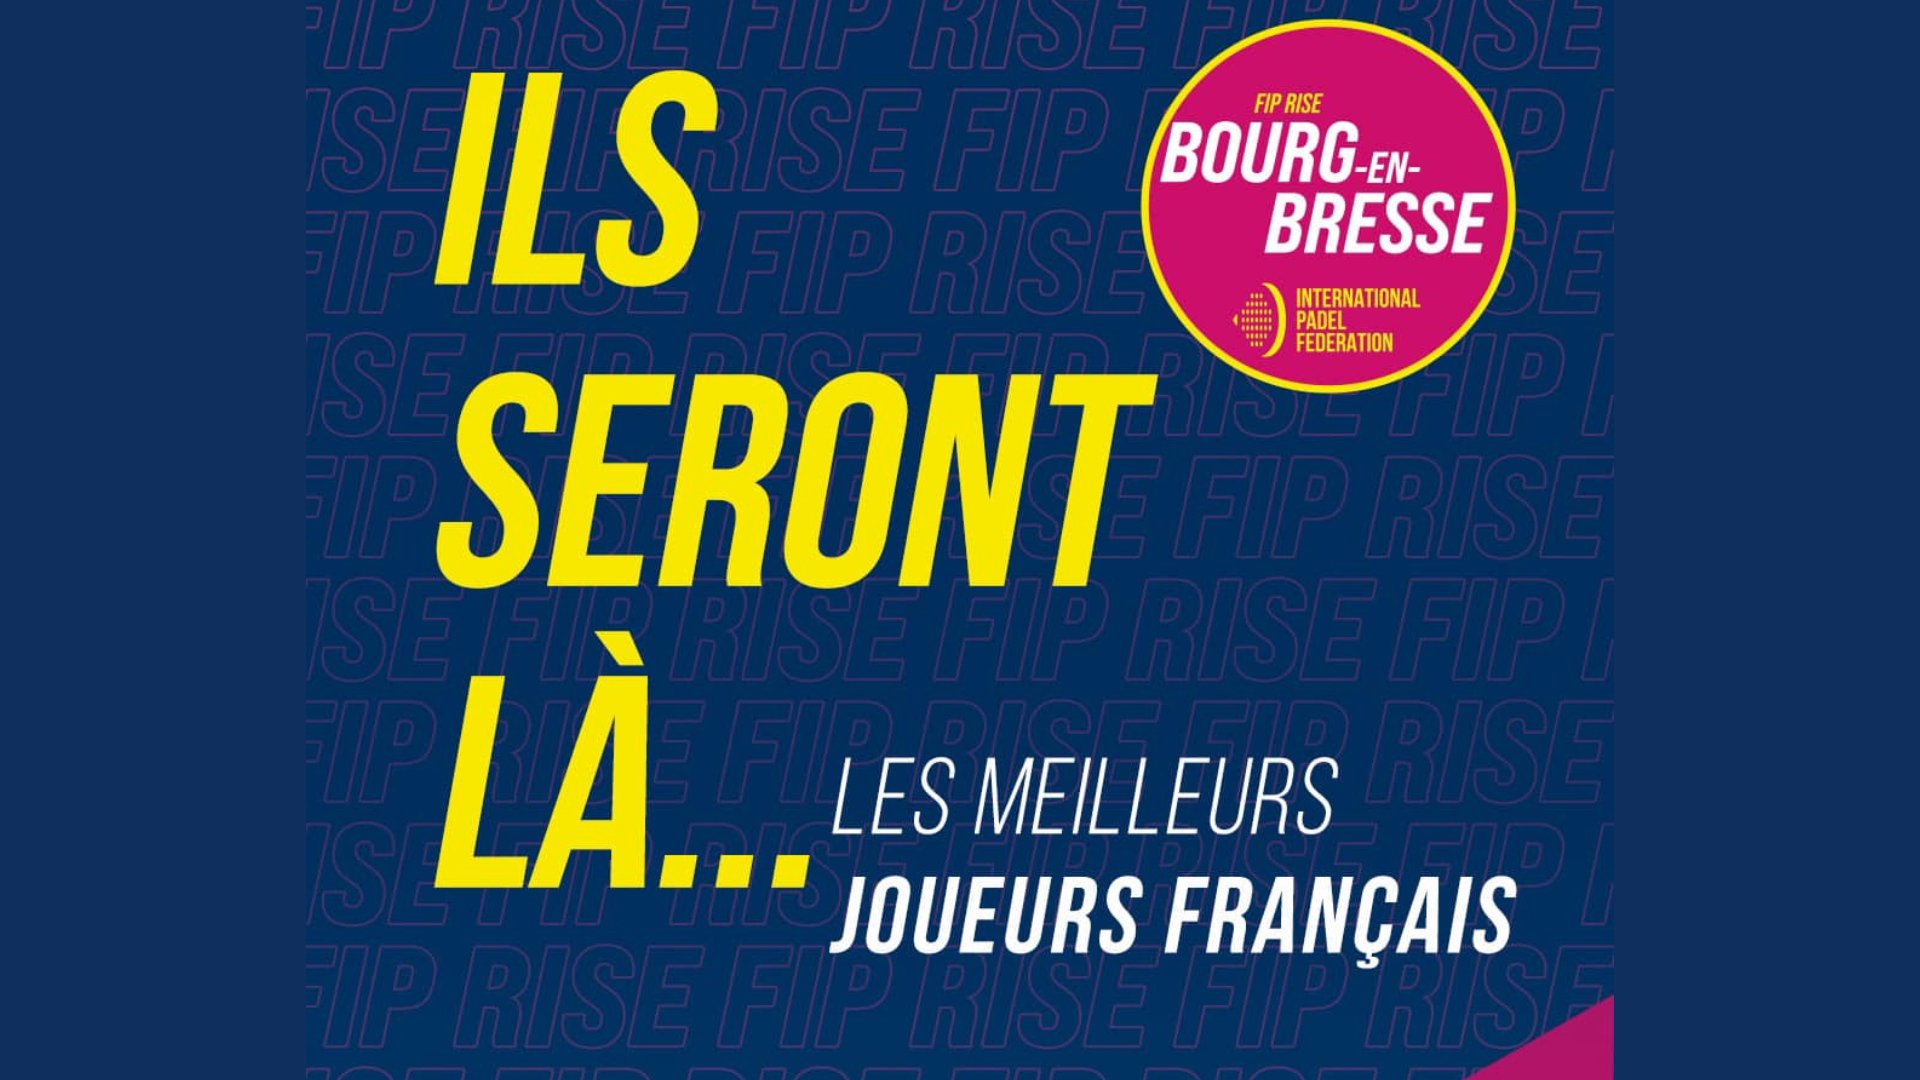 FIP Rise Bourg-en-Bresse: os melhores jogadores franceses estarão lá!